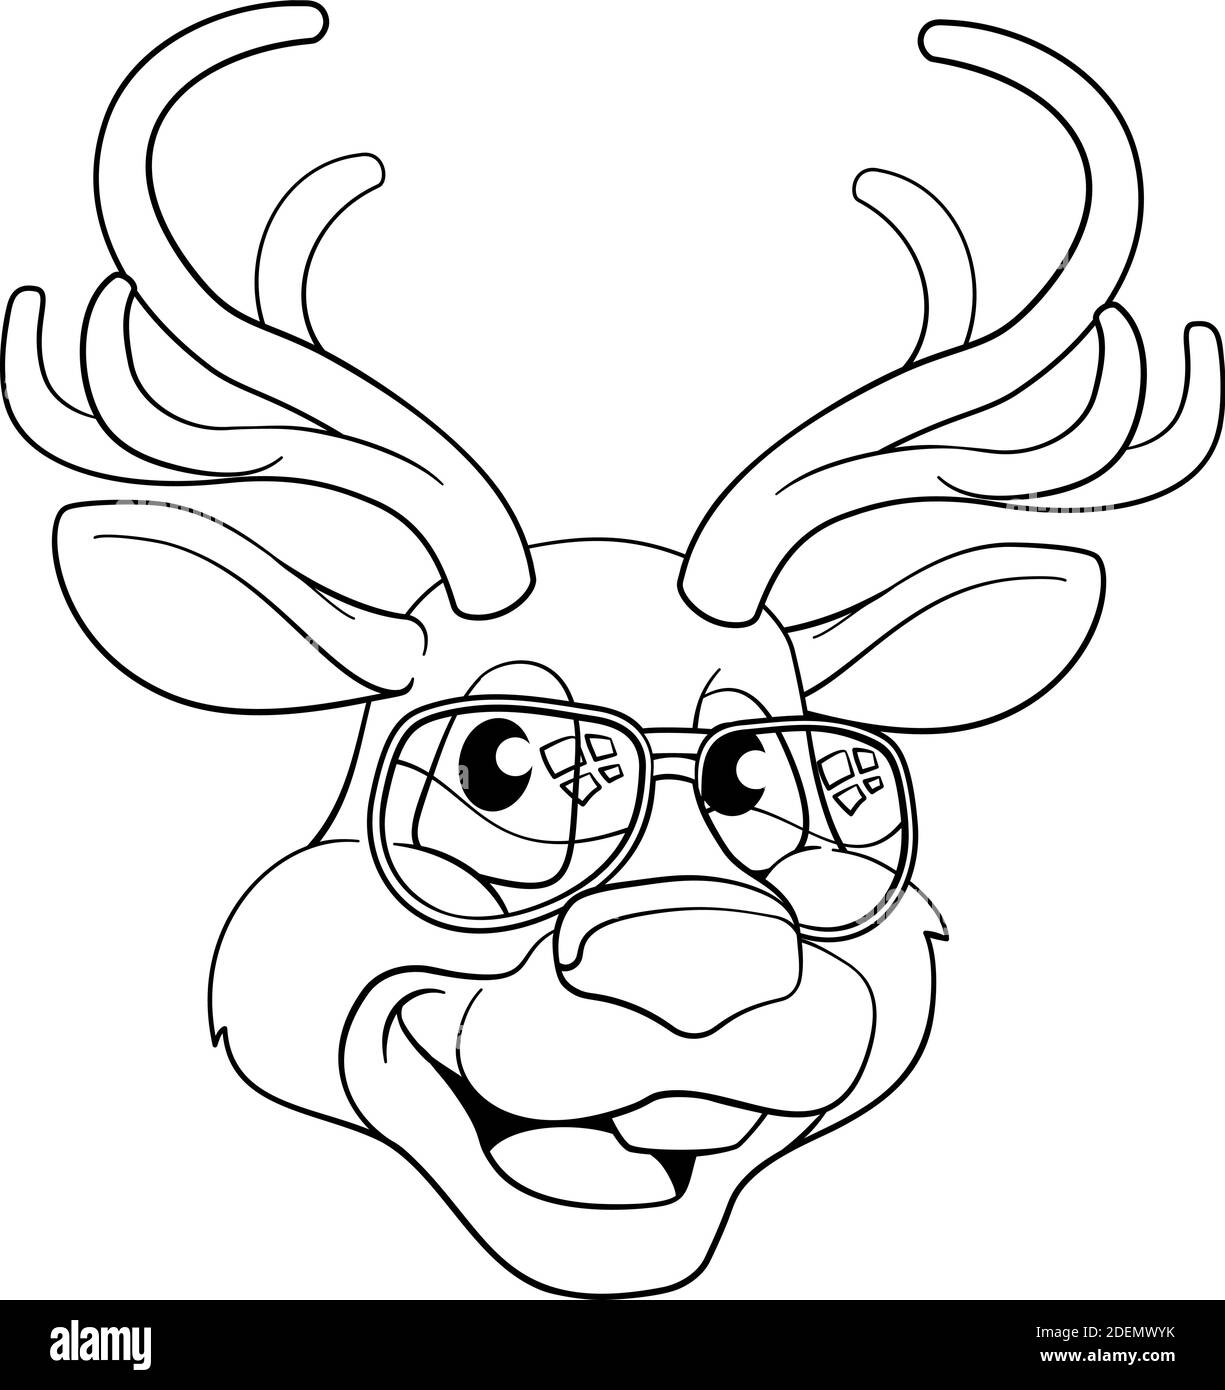 Christmas Cartoon Reindeer Character Stock Vector